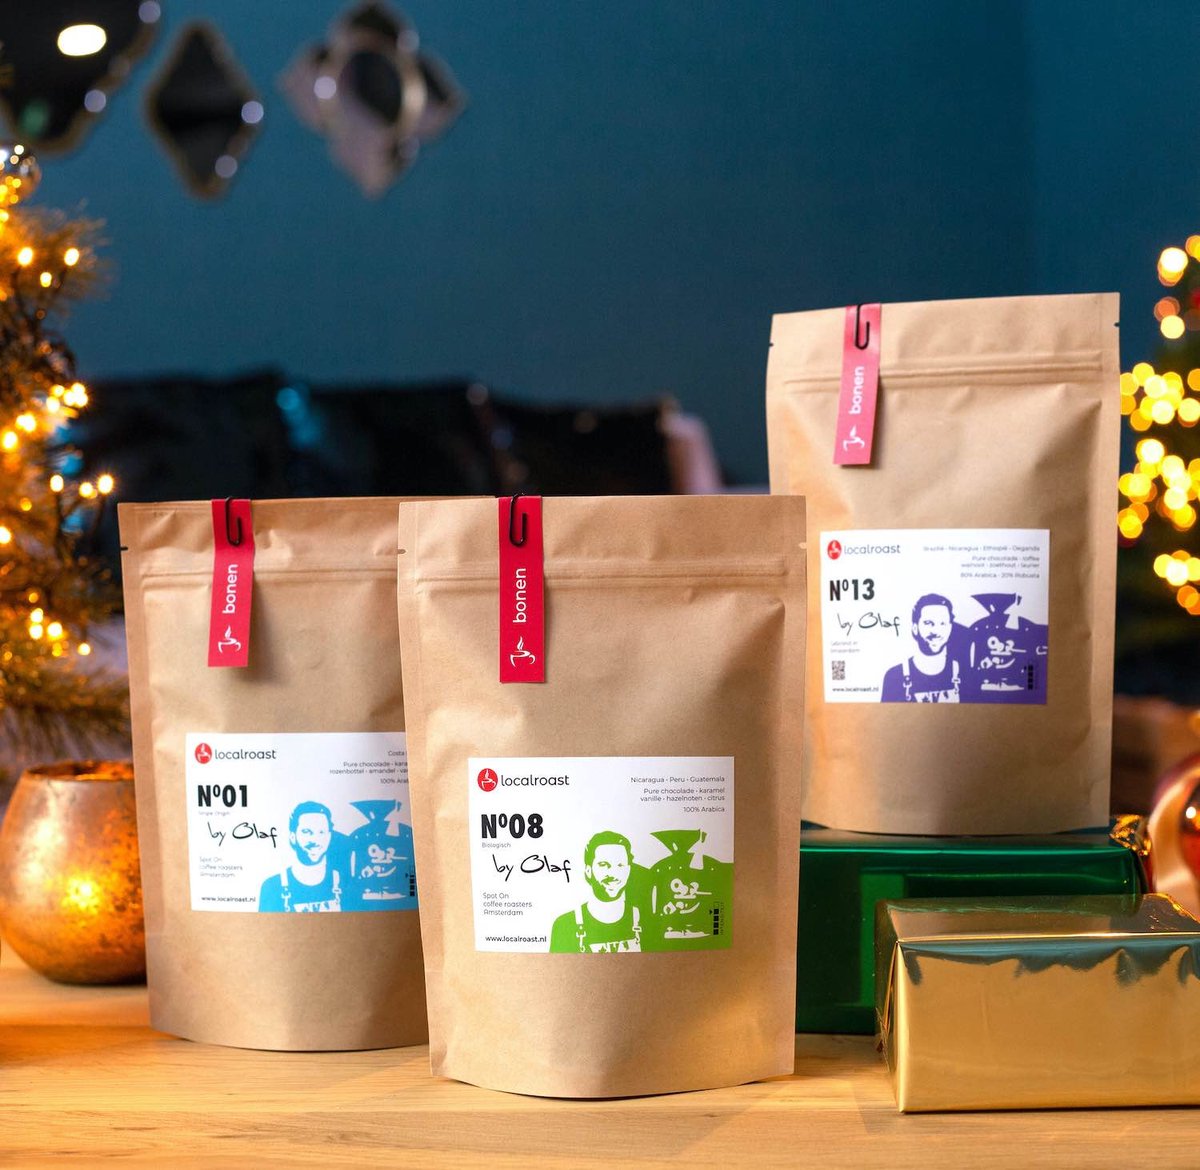 Localroast koffie proefpakket kerstcadeau met 3 x 200g vers gebrande koffies | Bonen | met kerstkaart | cadeaupakket | voor koffieliefhebber